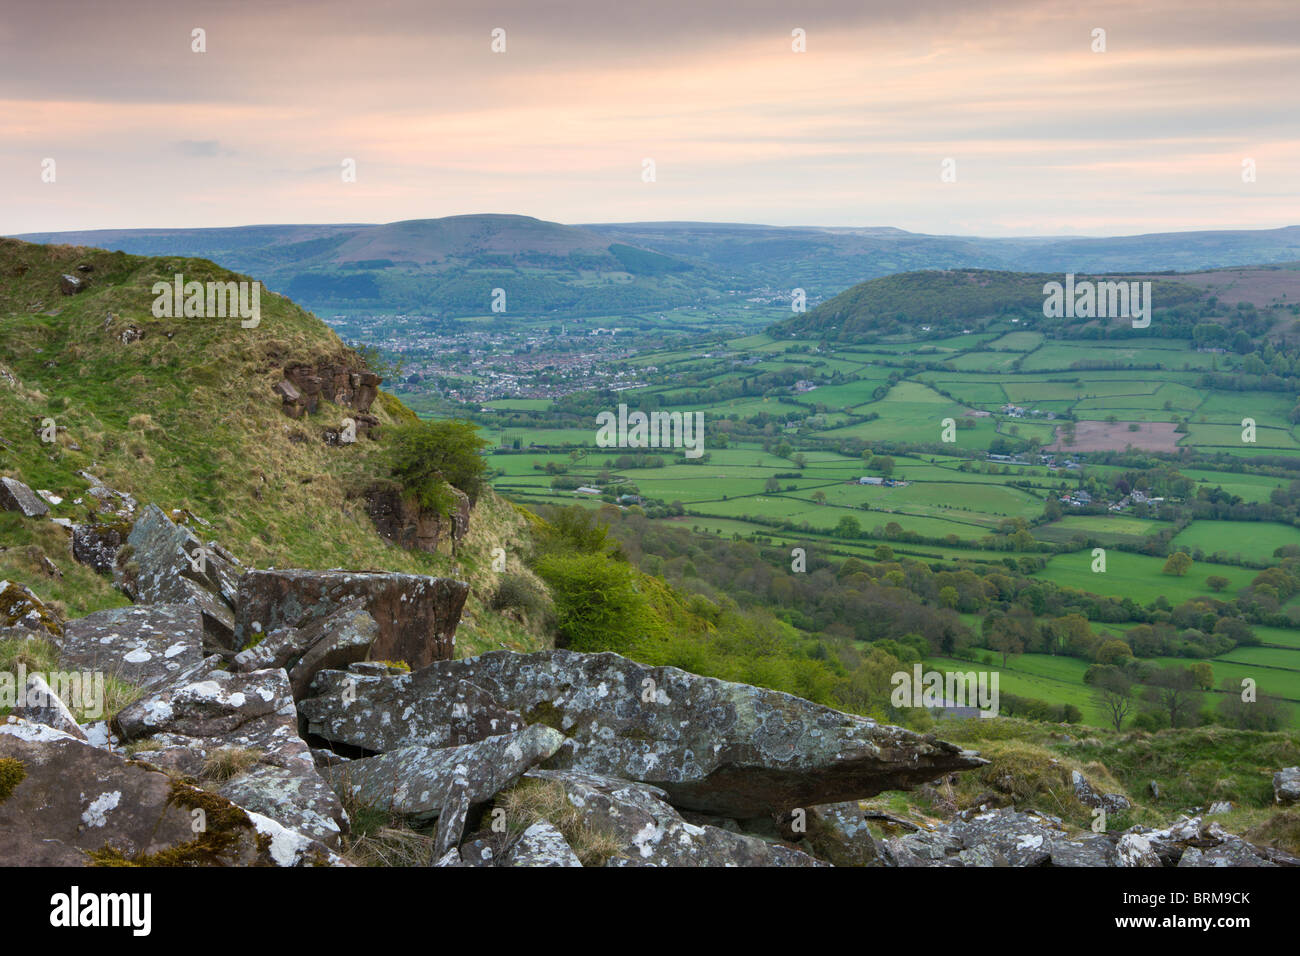 La campiña mirando hacia Abergavenny desde la cumbre de la (Ysgyryd Skirrid Fawr) montaña, Brecon Beacons Foto de stock